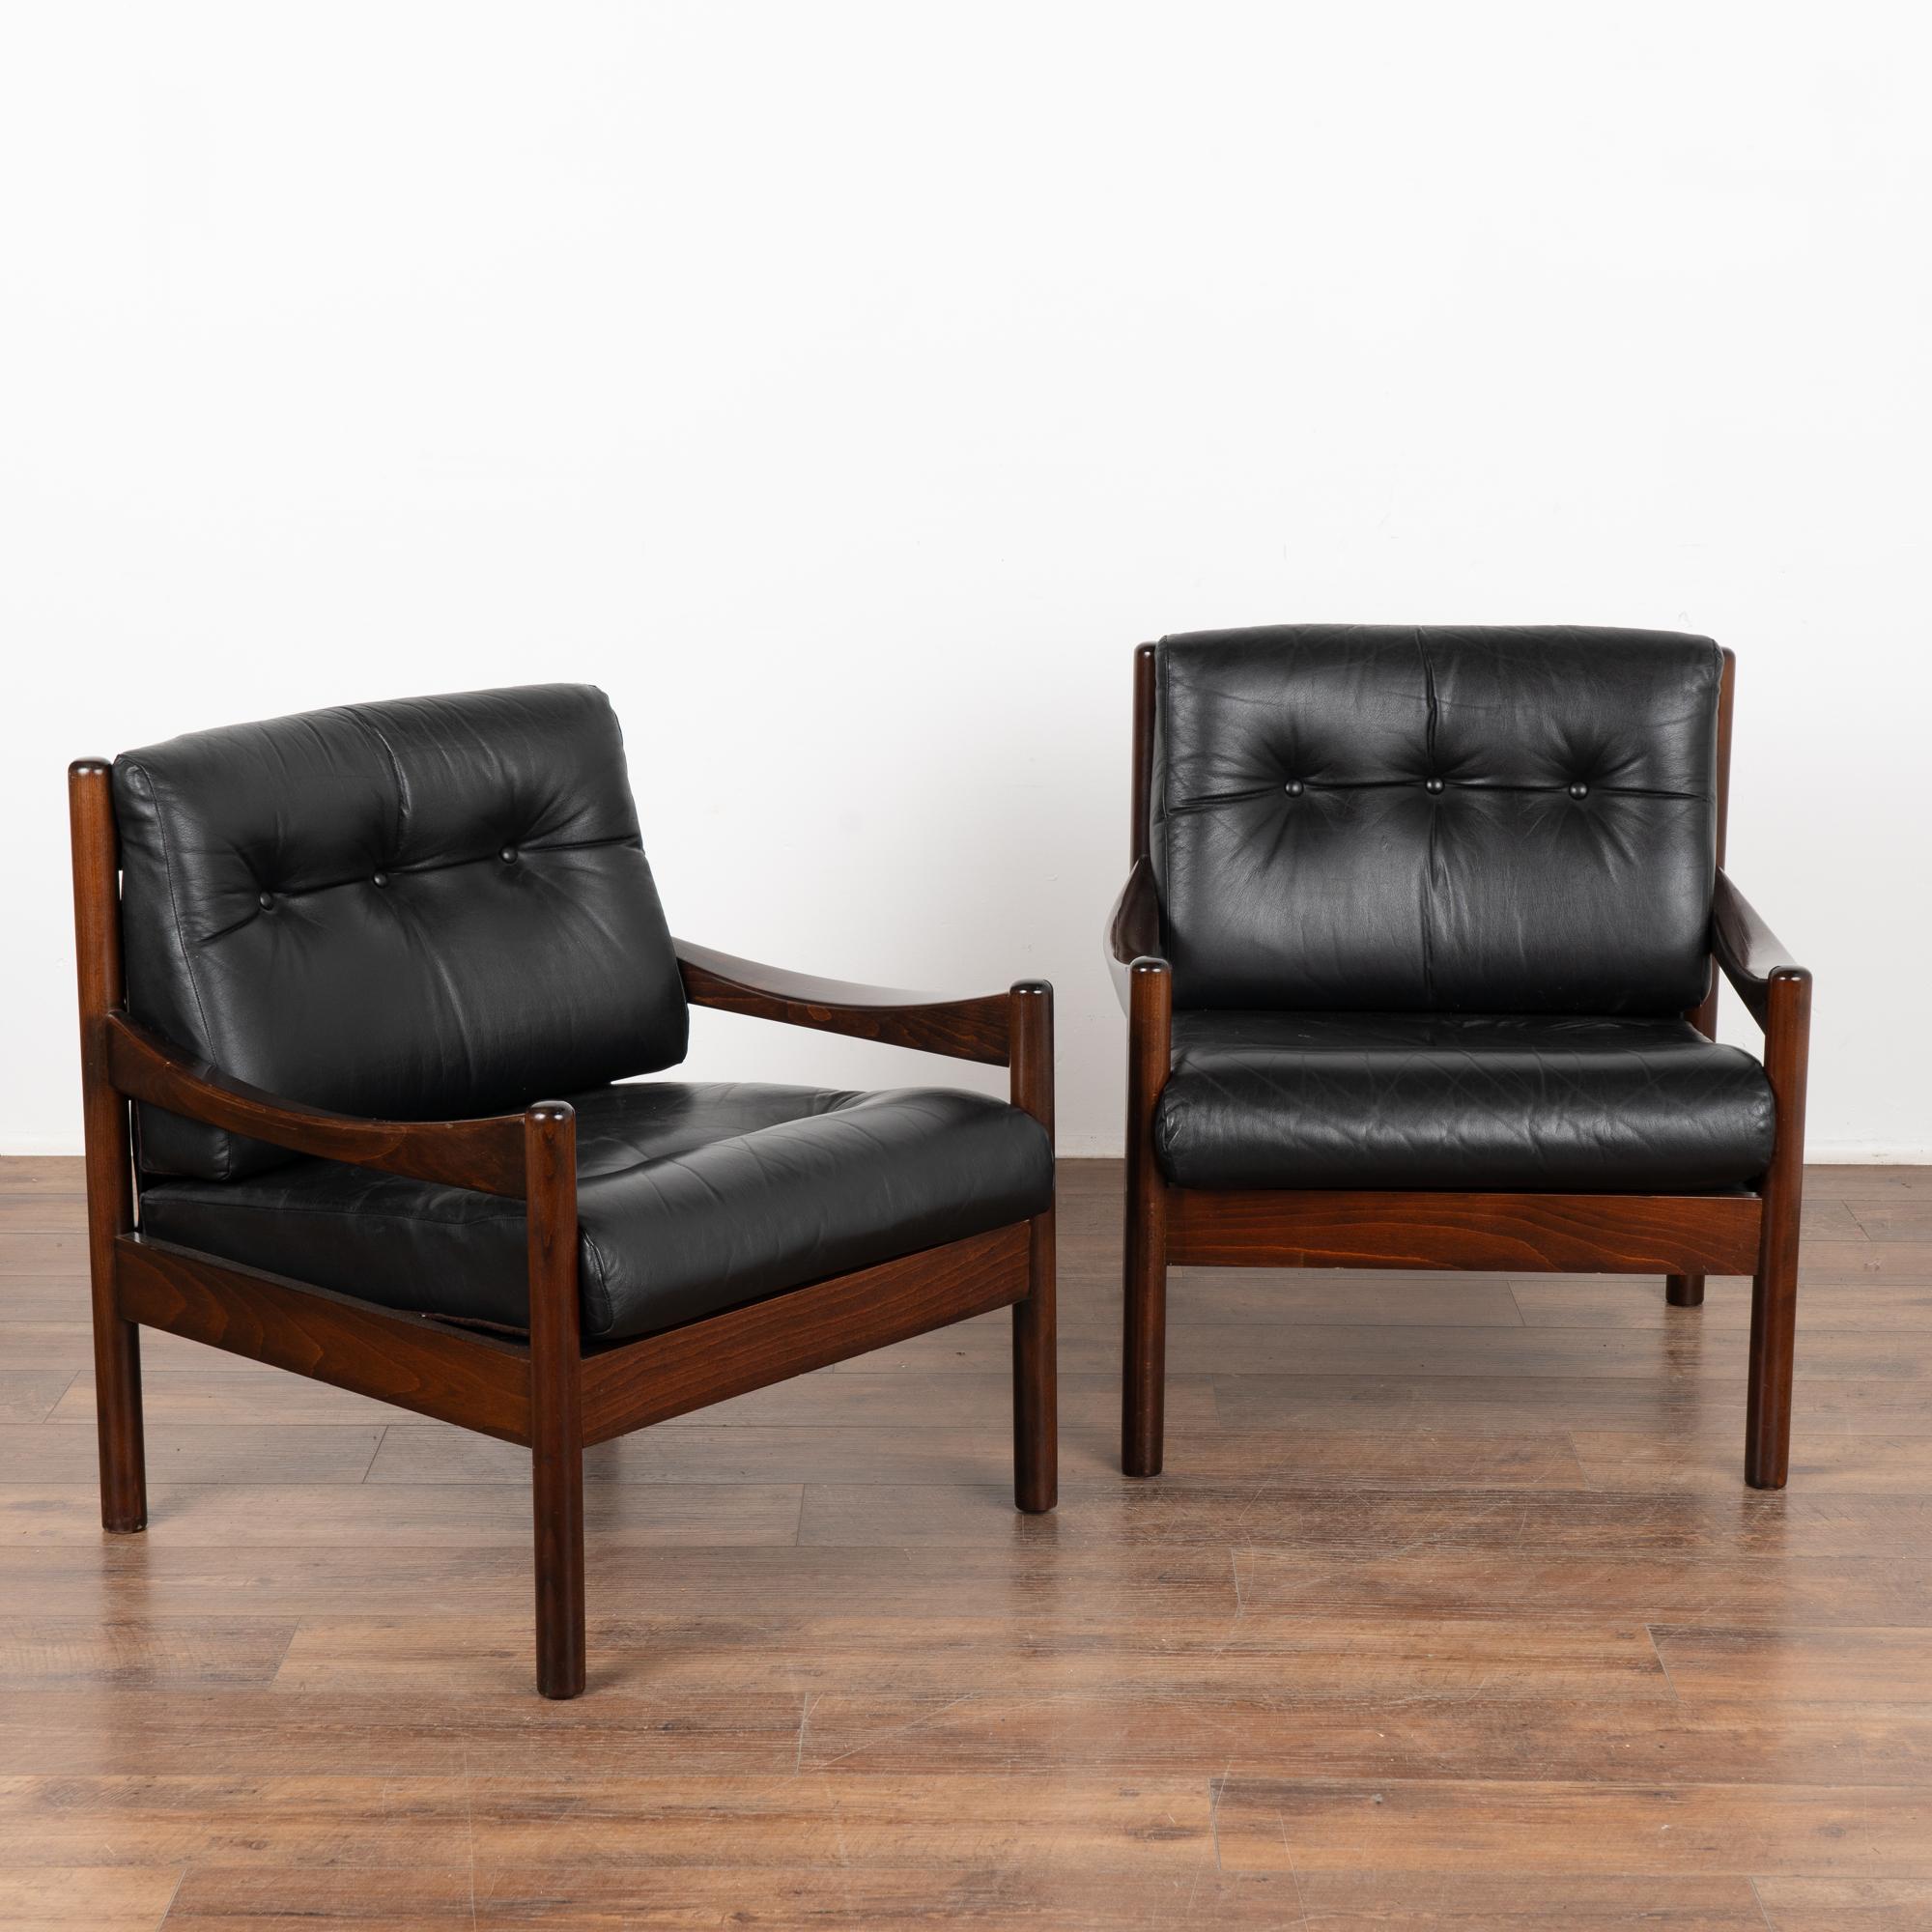 Paire de fauteuils en cuir noir moderne du milieu du siècle, avec dossier et assise touffetés, trois boutons en place sur chacun d'eux.
D'un design moderne et épuré, avec une structure en bois dur, ces chaises offrent une assise basse et